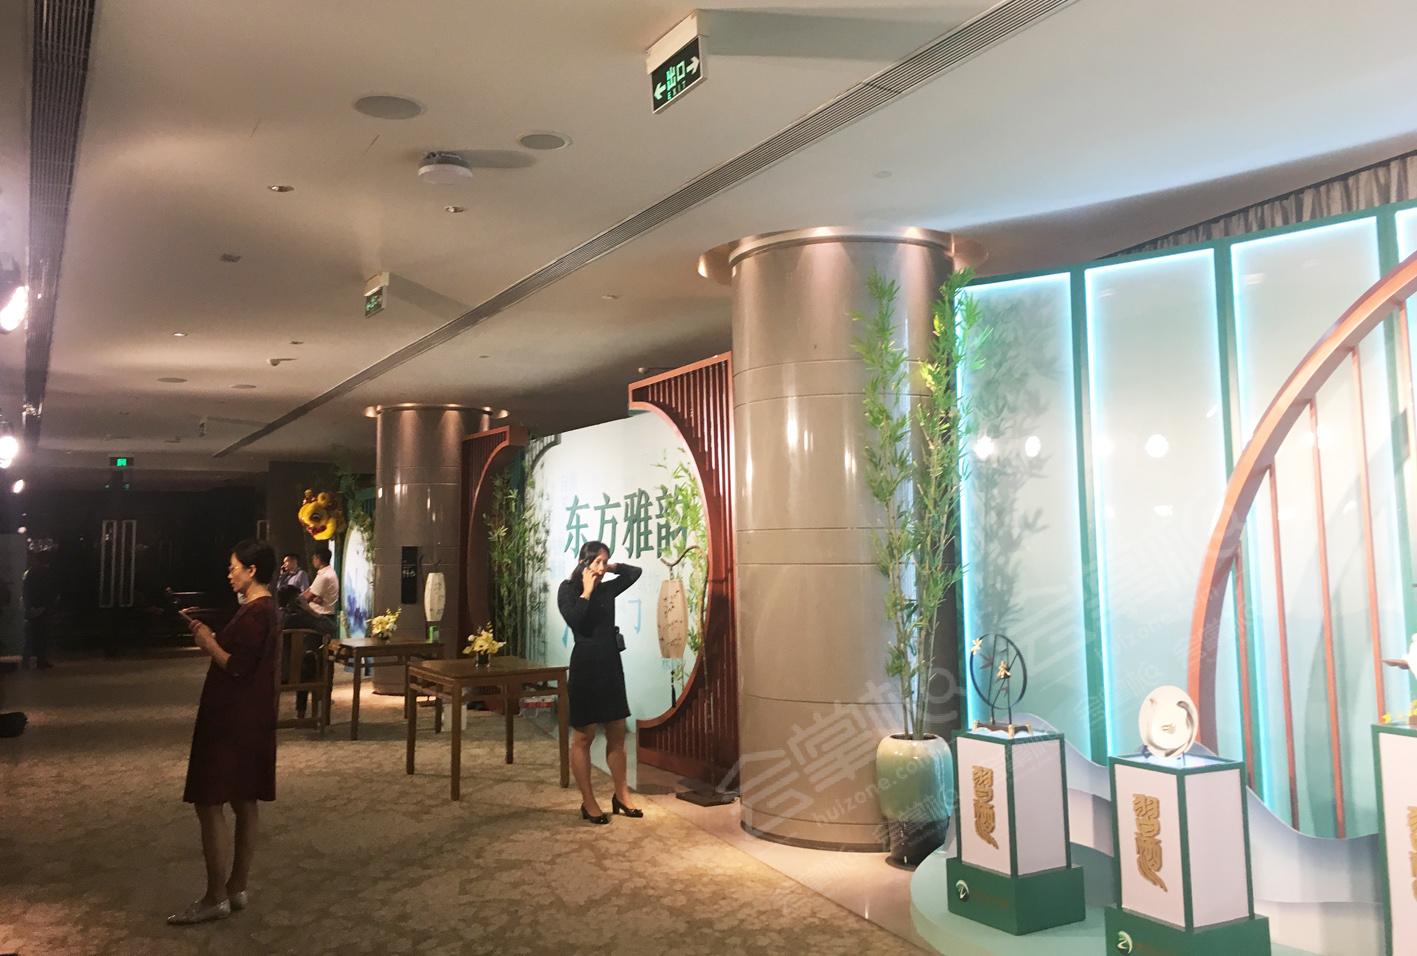 君品习酒在广州四季酒店举办君品雅宴活动2019年